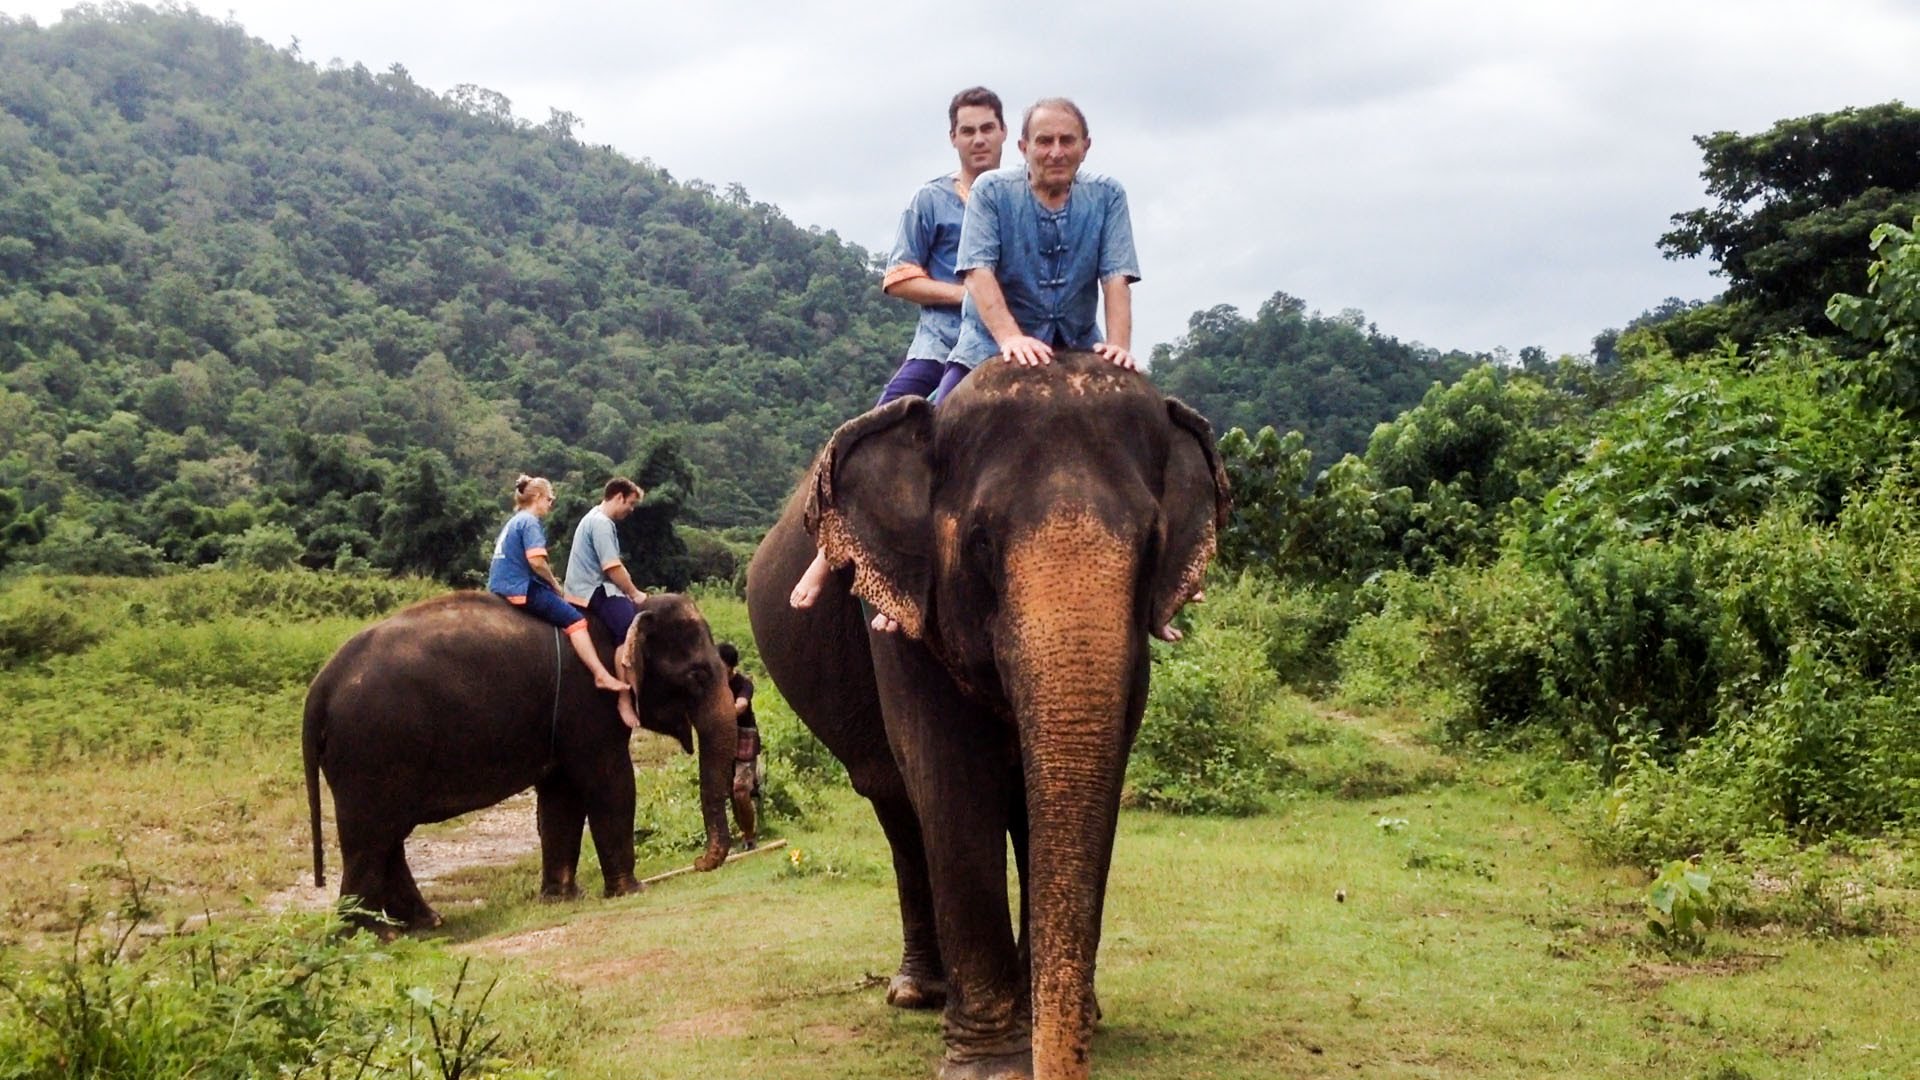 Ethical ways to enjoy Elephant Tourism | TourPirate Blog